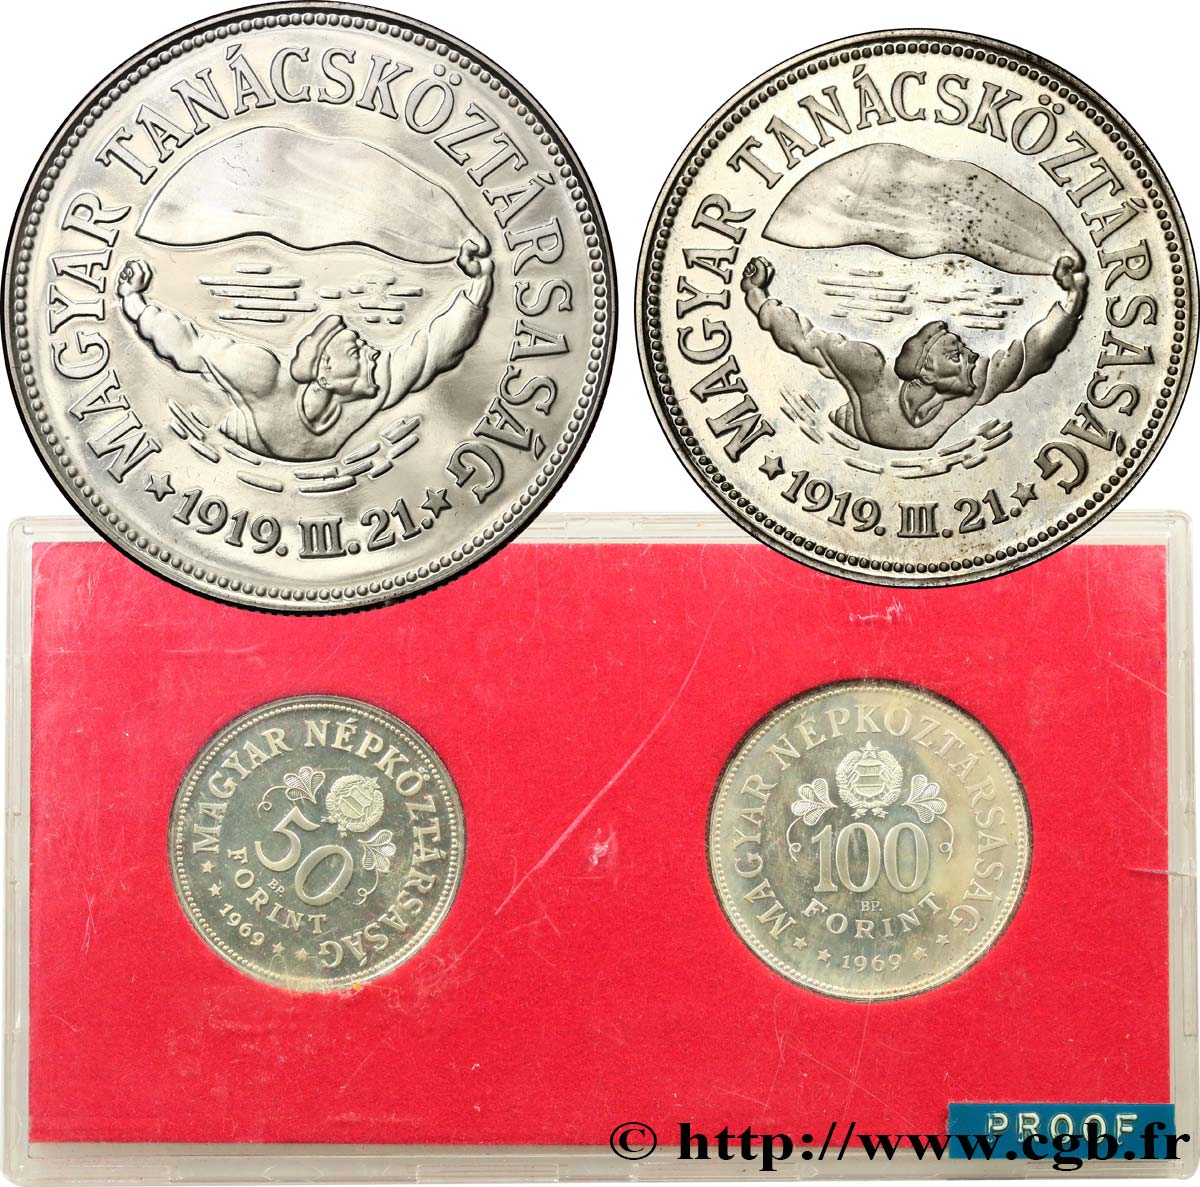 HONGRIE Série Proof - 2 monnaies - 50e anniversaire des soviets du 31 mars 1919 1969 Budapest BE 